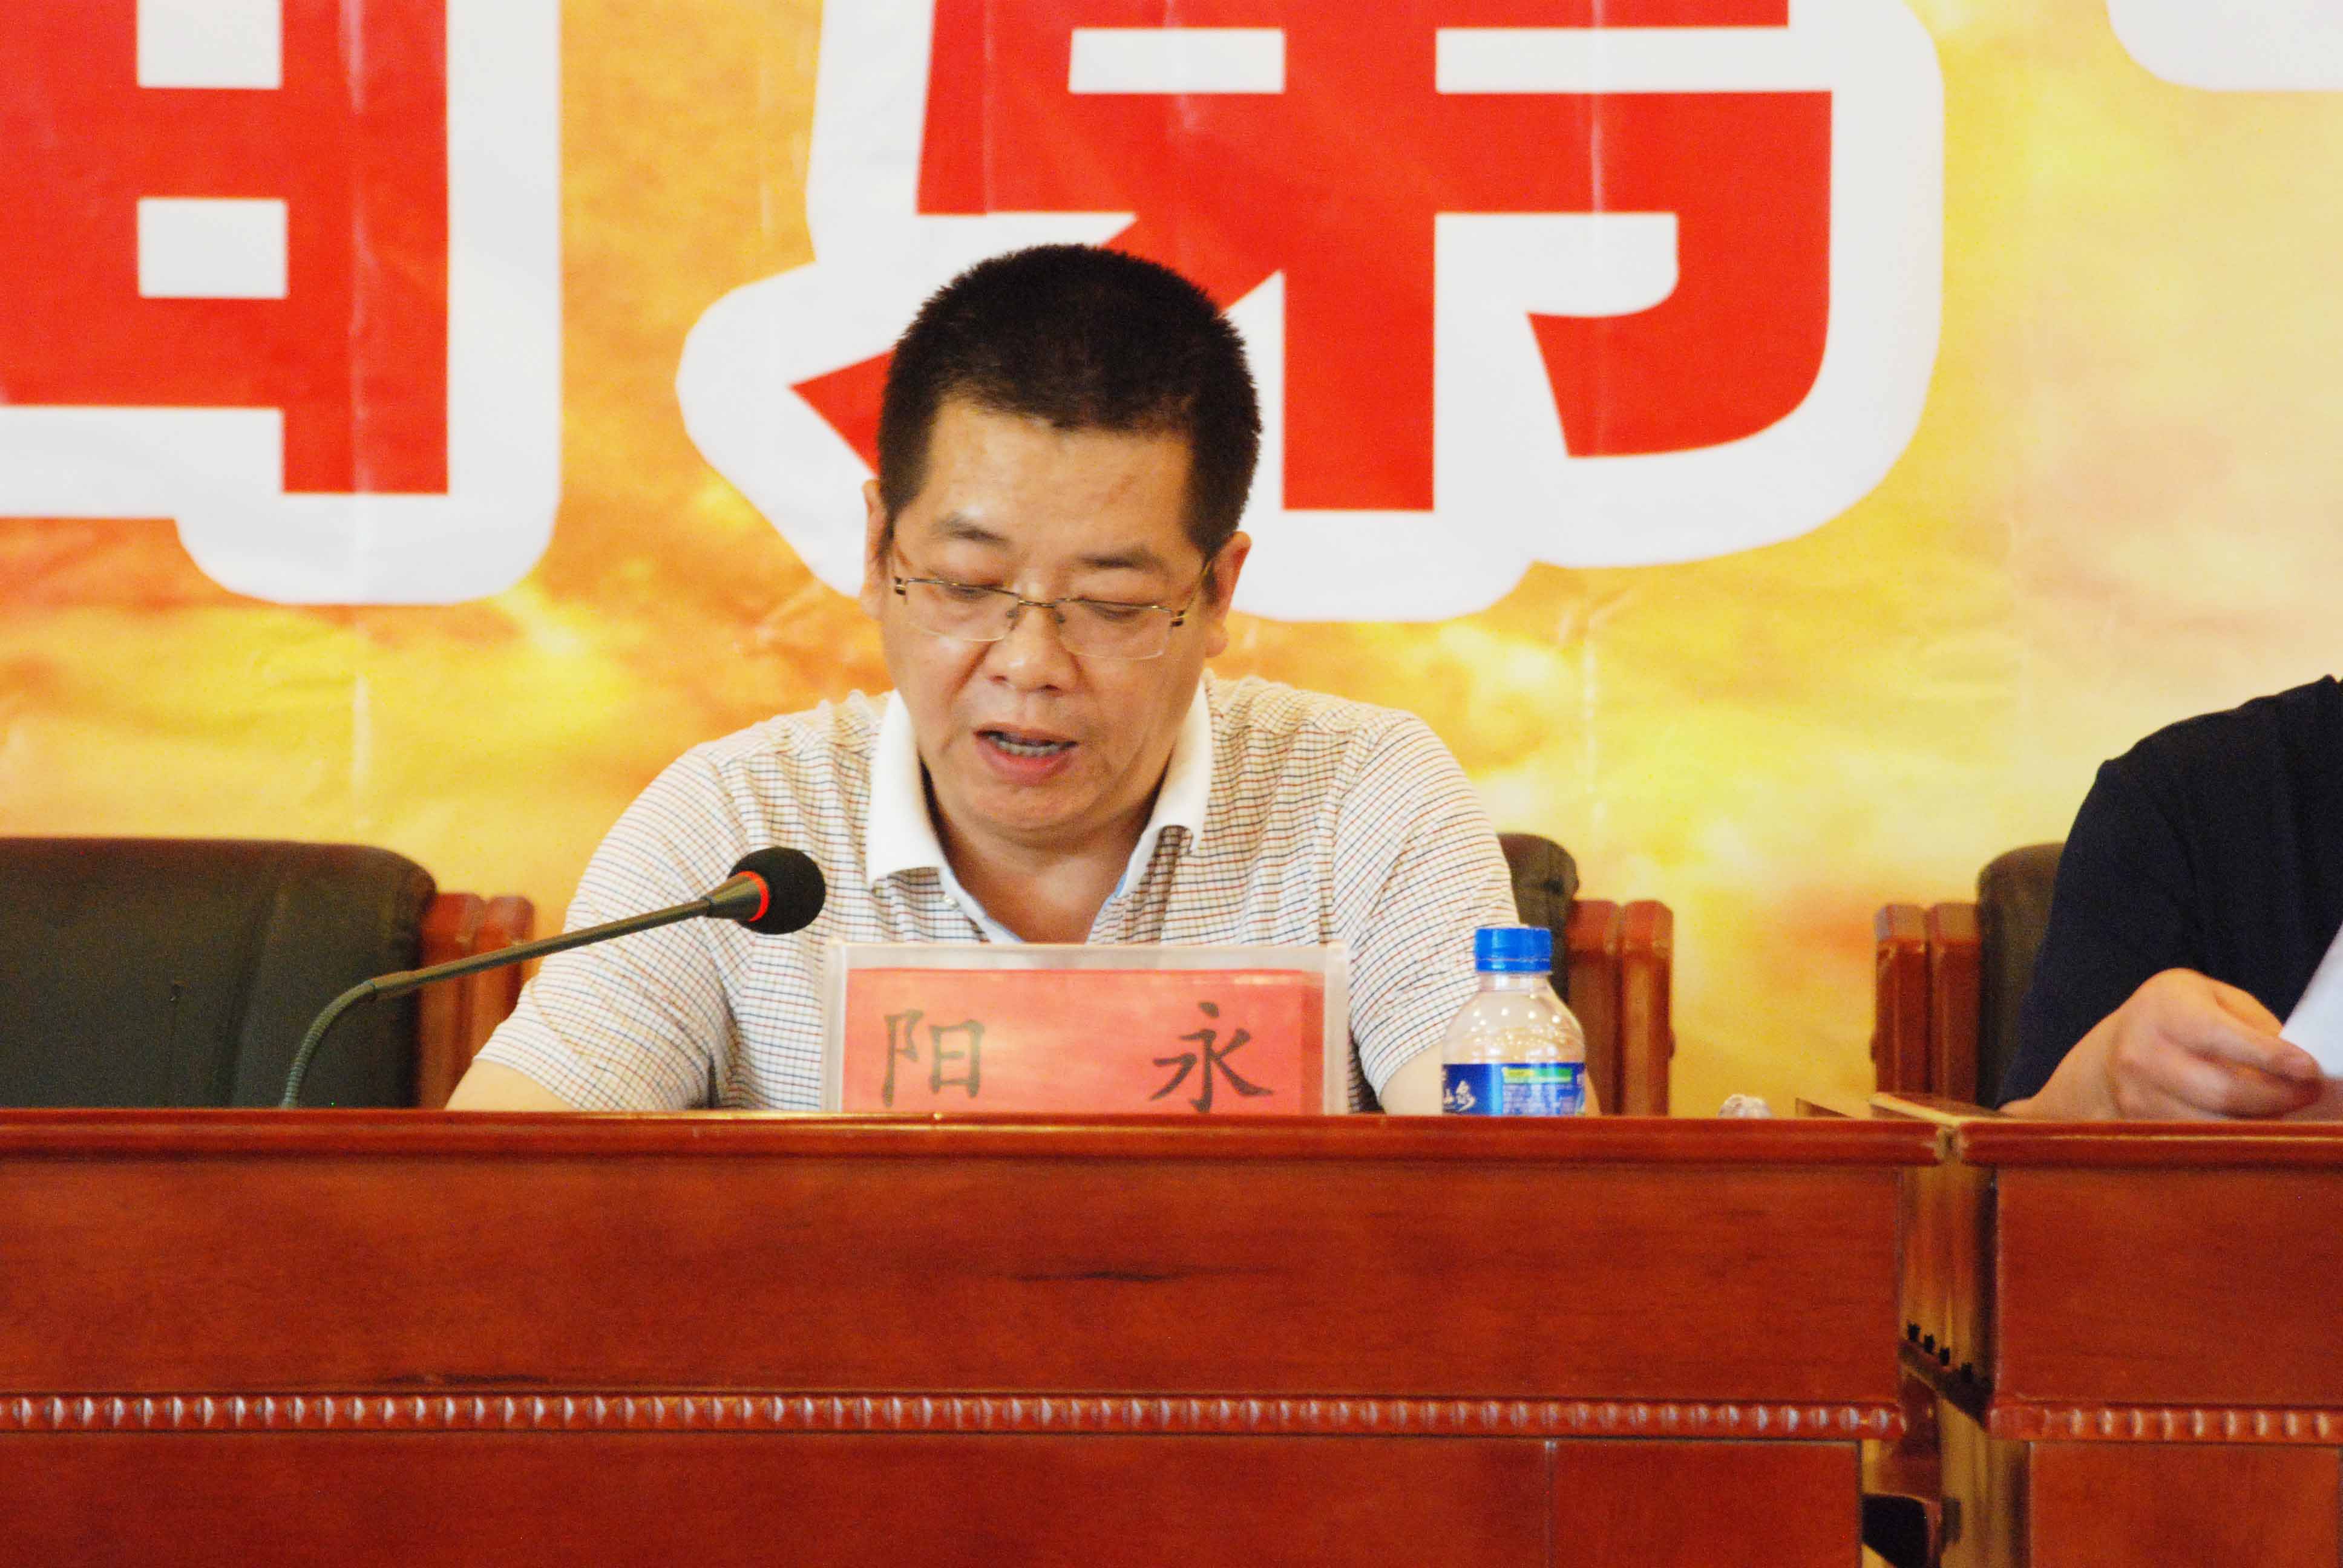 文山州招商合作局外来投资服务科科长阳永主持选举第三届理事会。